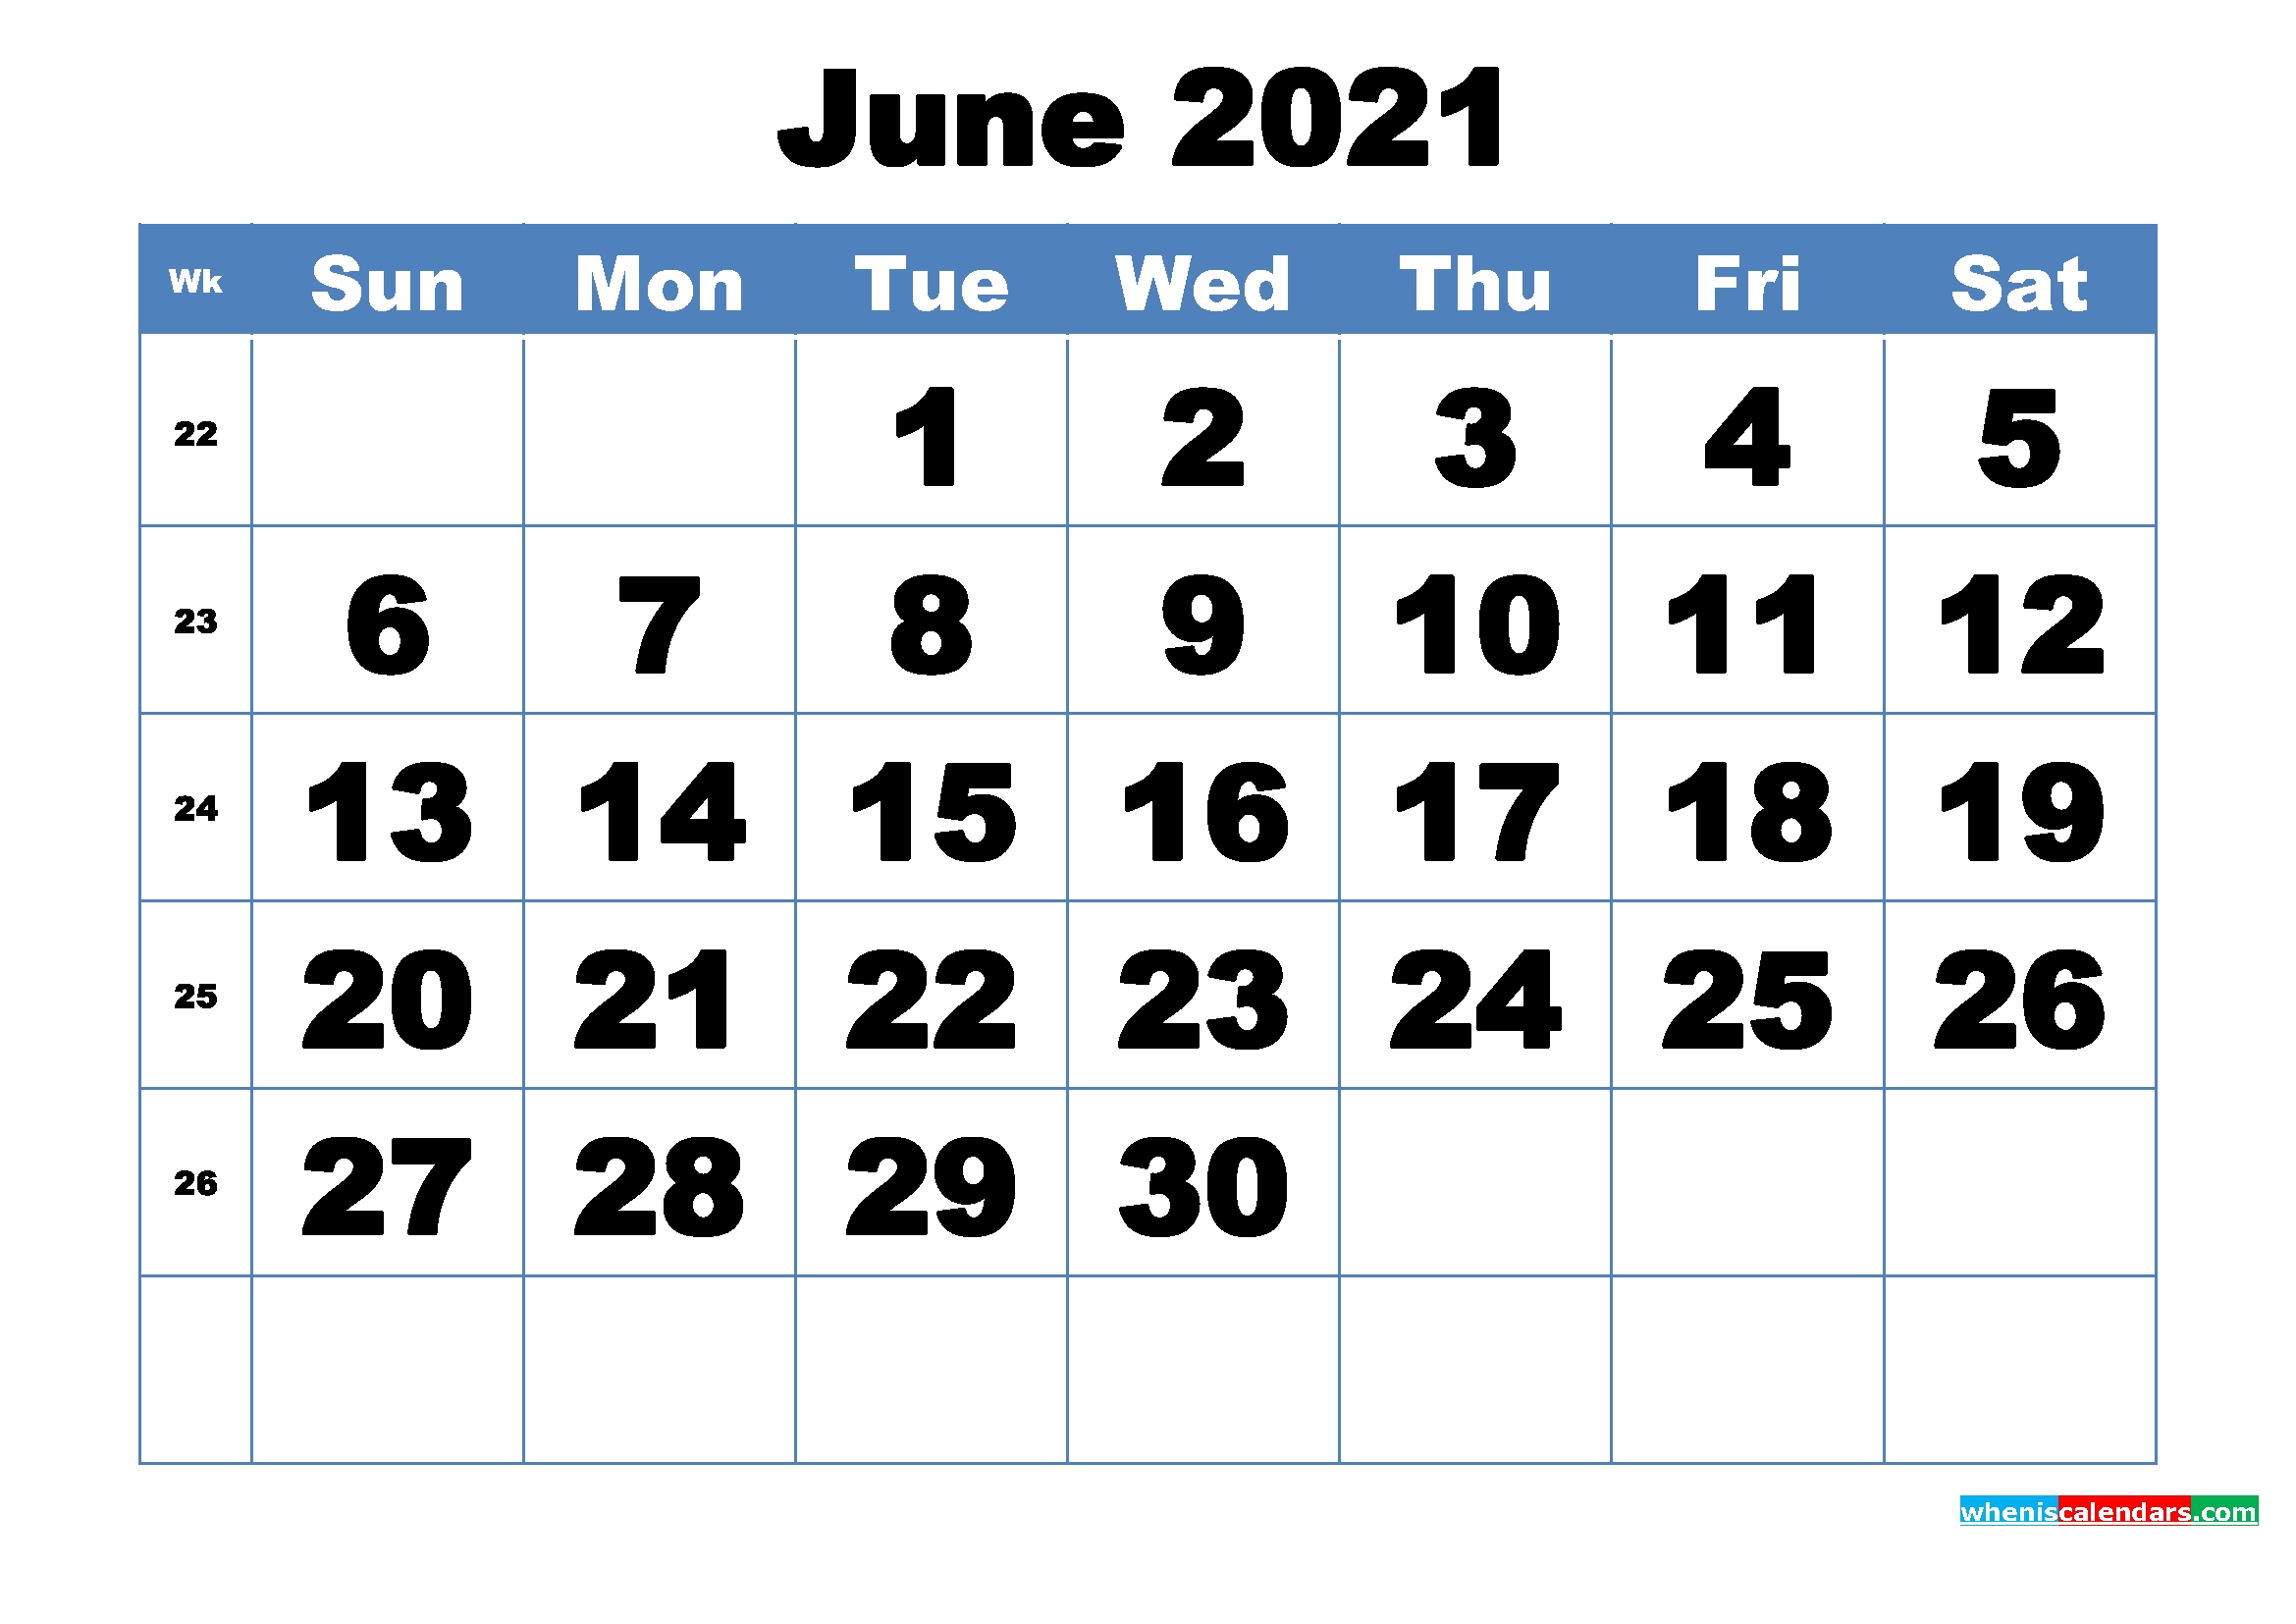 Free Printable June 2021 Calendar Template Word, Pdf Month Of June 2021 Calendar